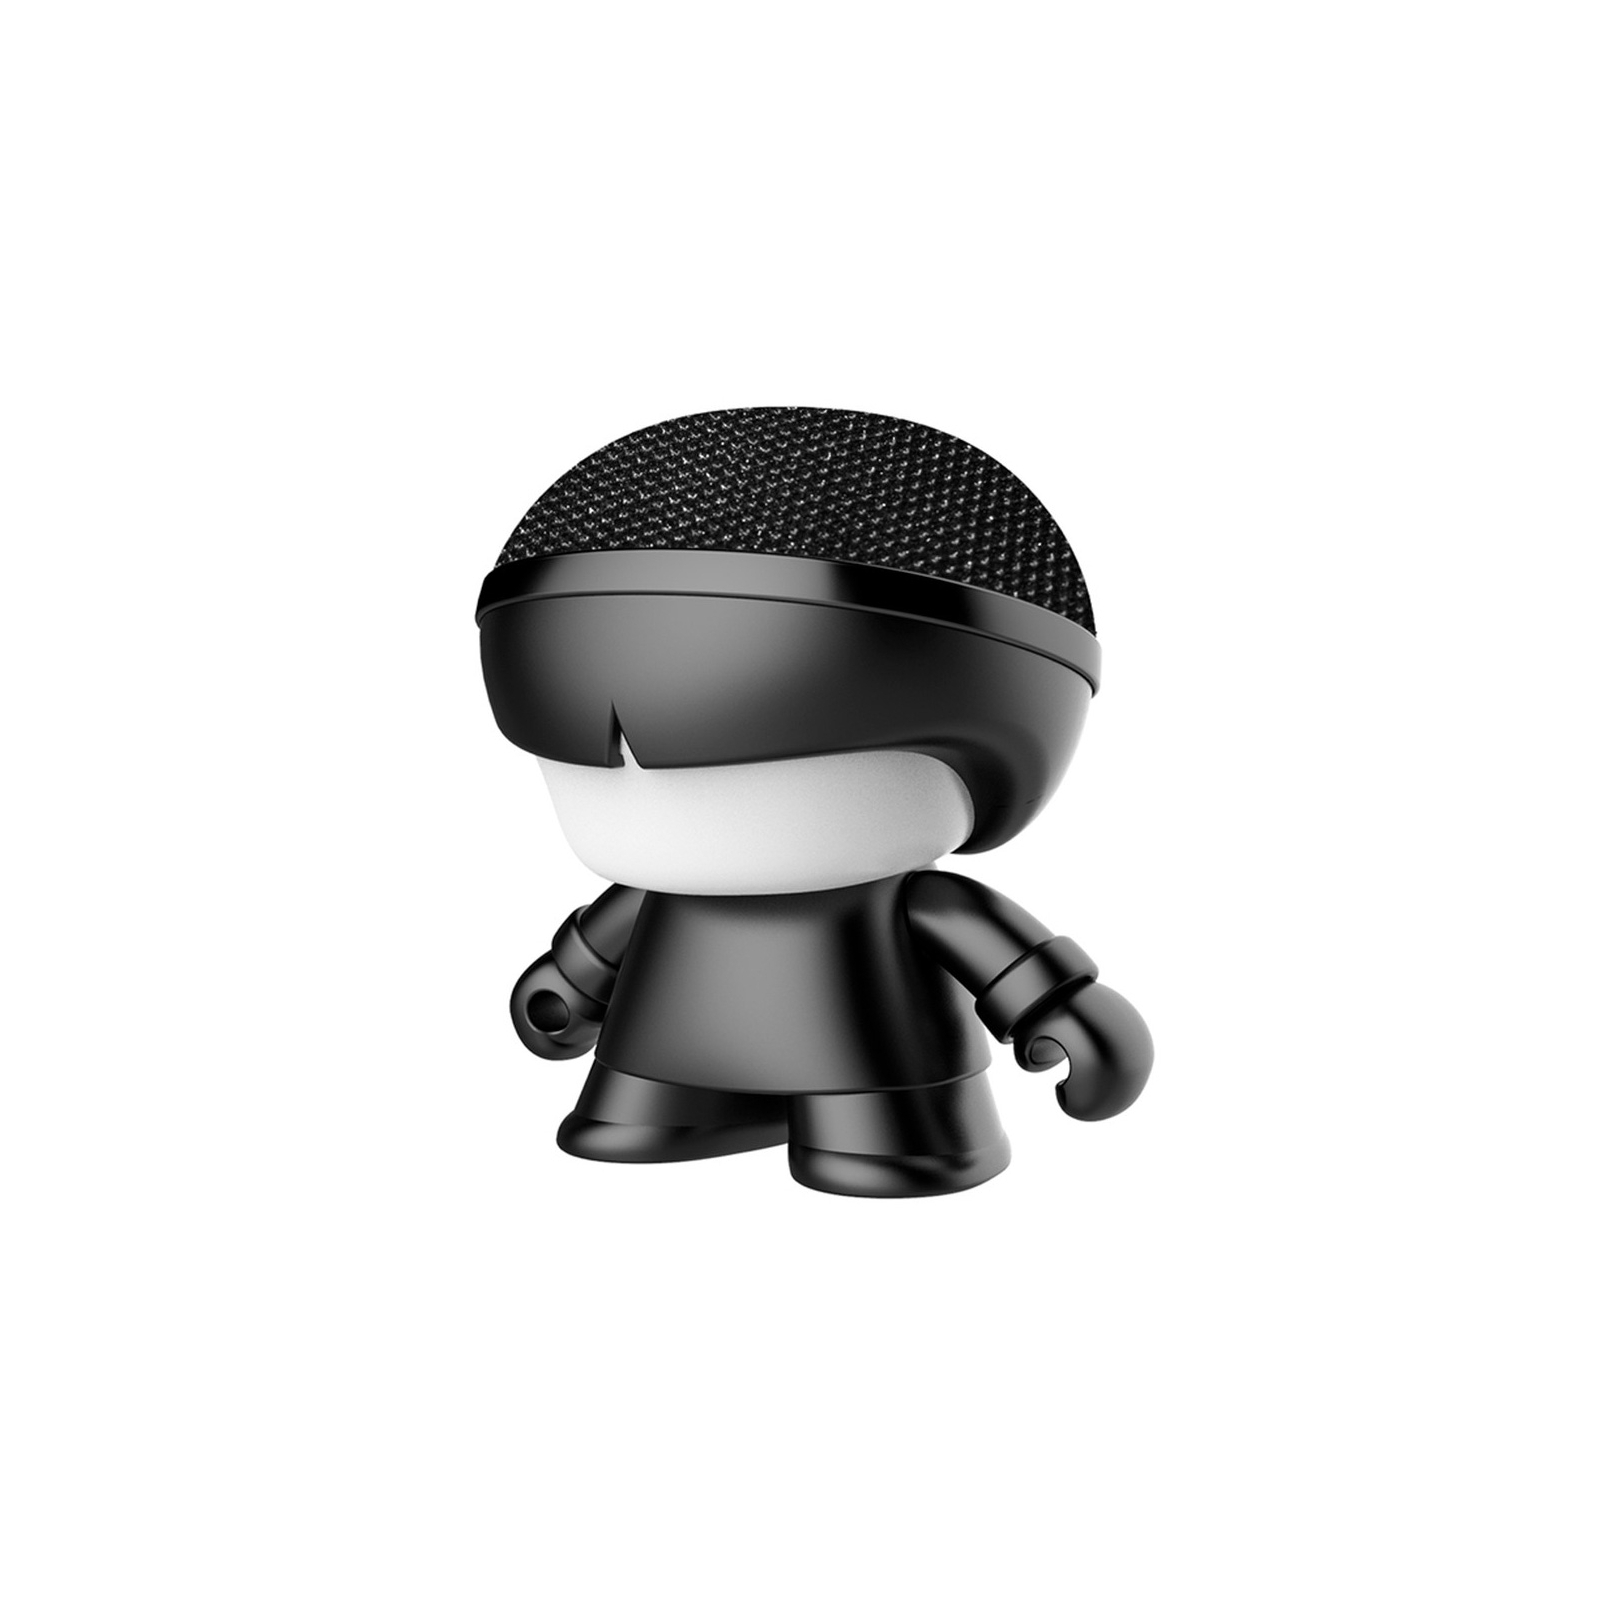 Интерактивная игрушка Xoopar Акустическая система Mini Xboy Металлик Black (XBOY81001.21М)